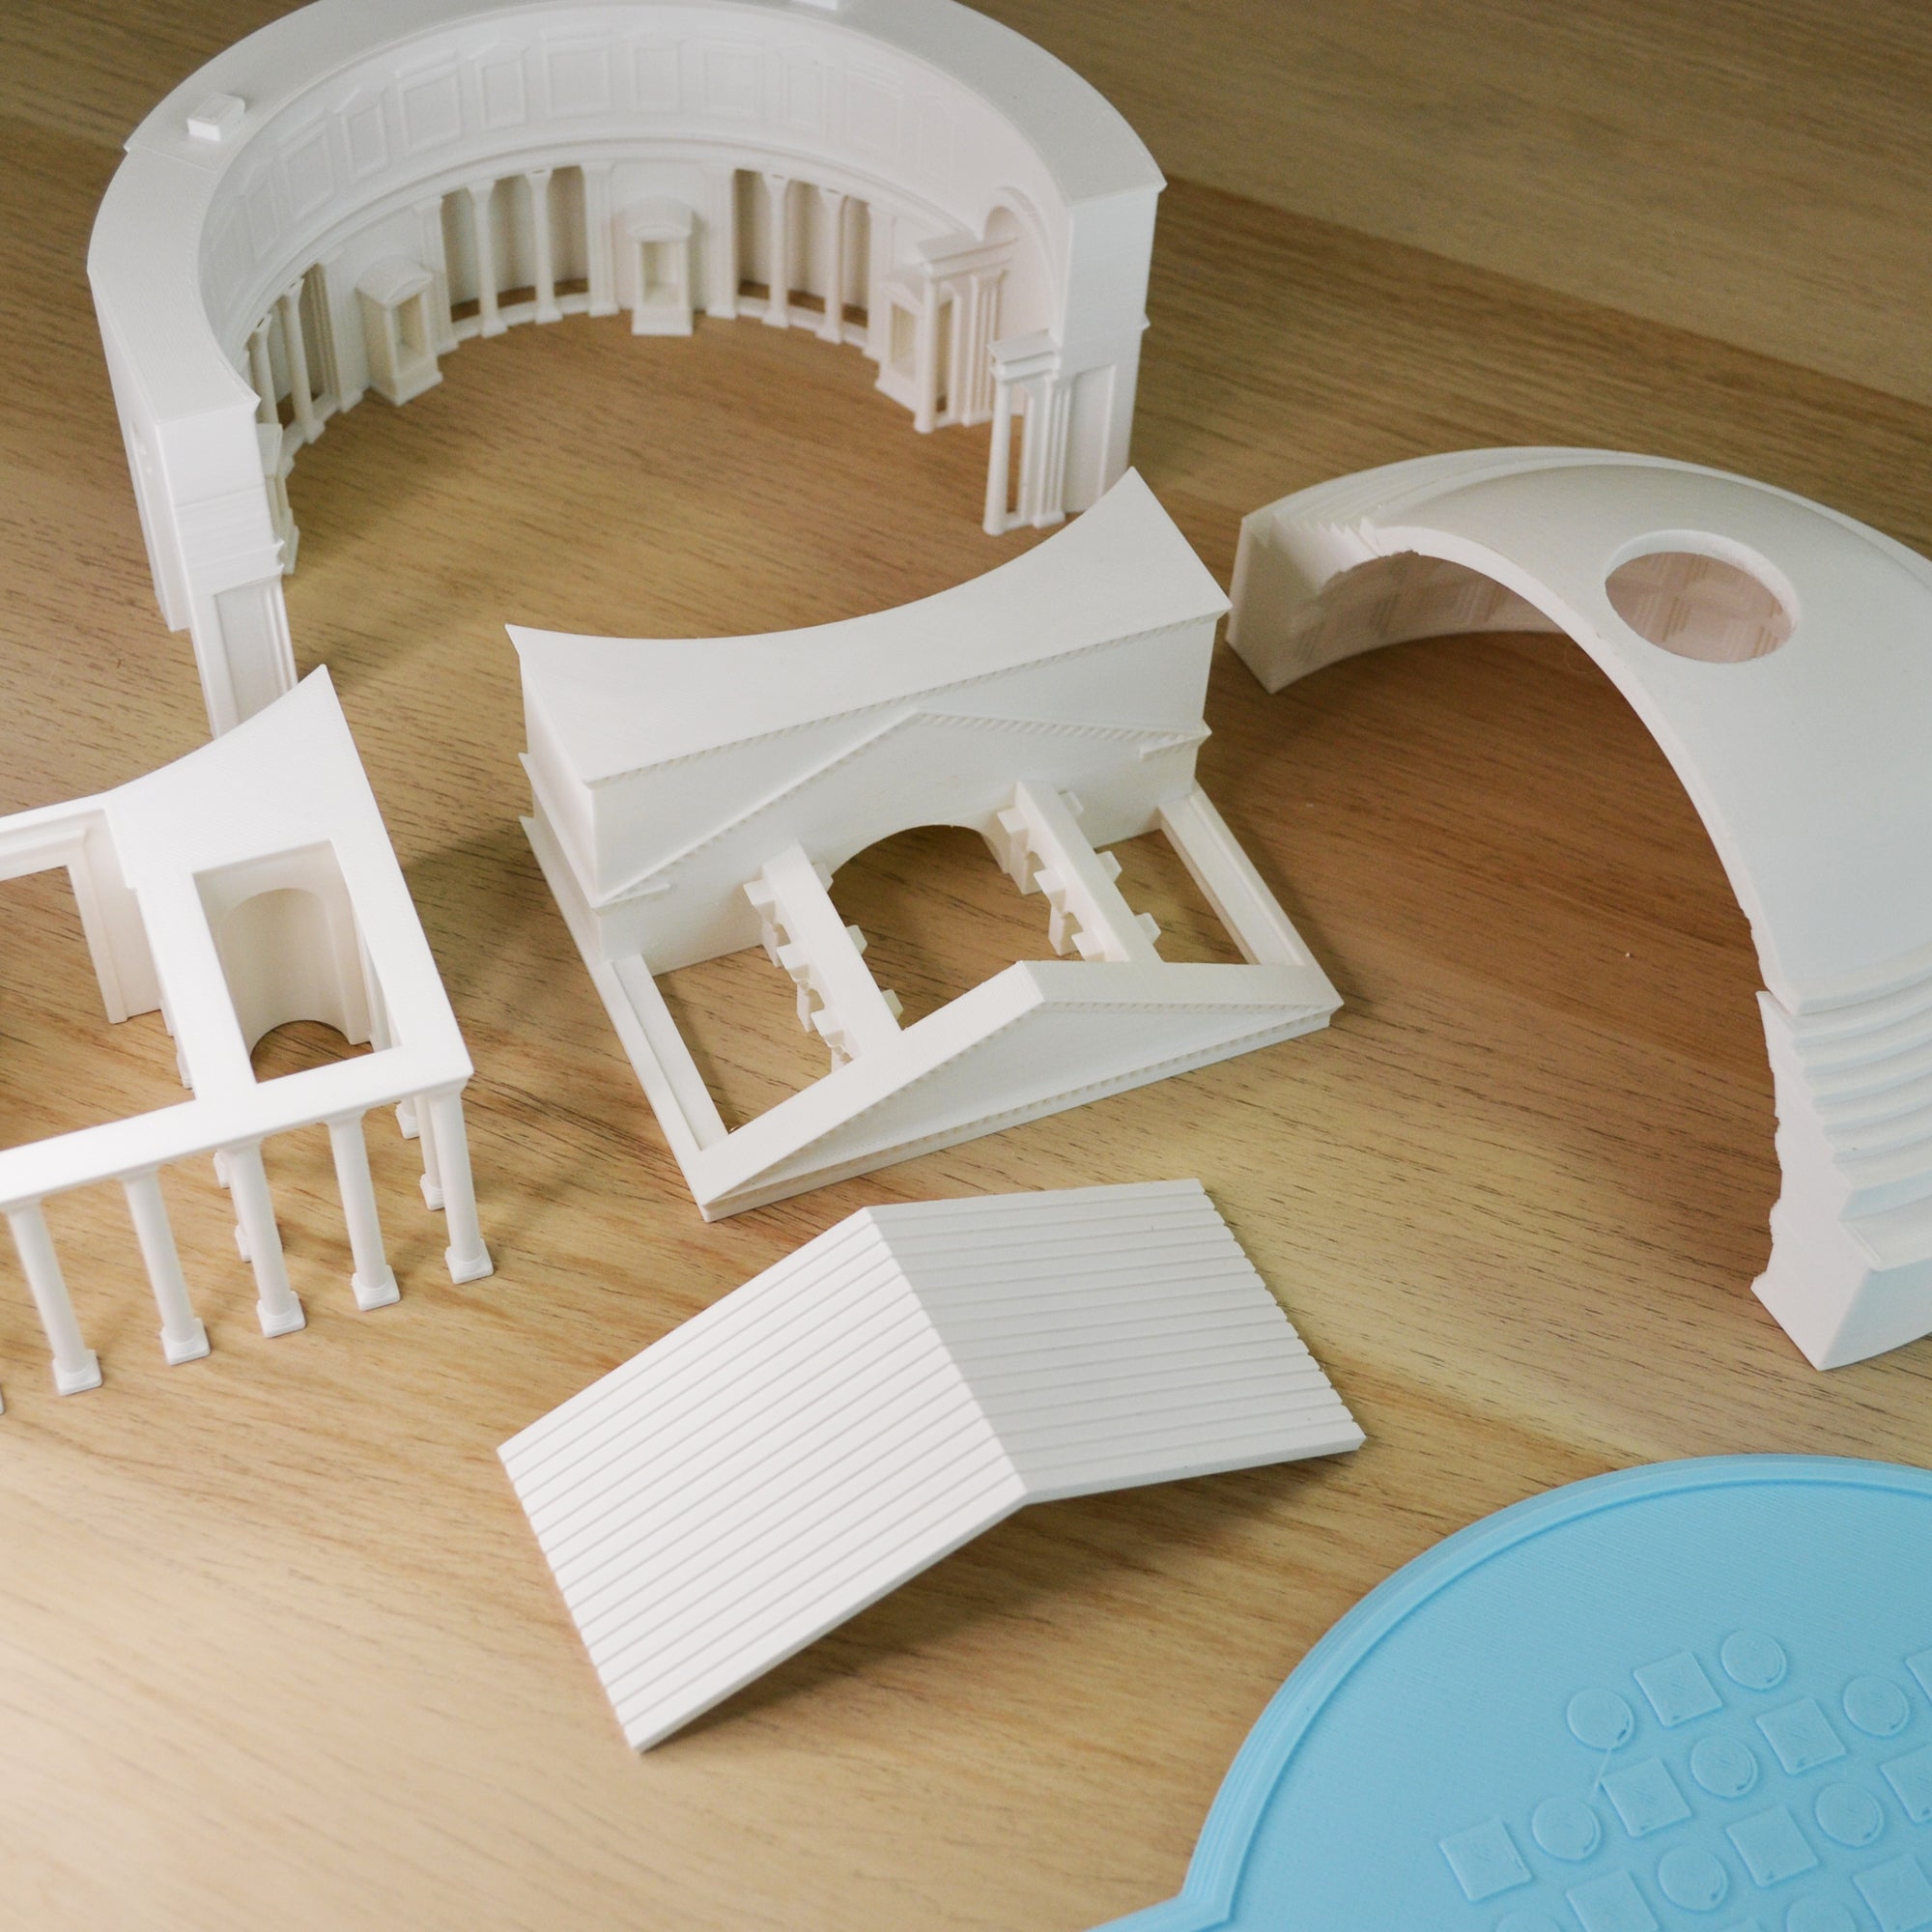 Modellino 3D del Pantheon: Esperienza Immersiva di Architettura e Design